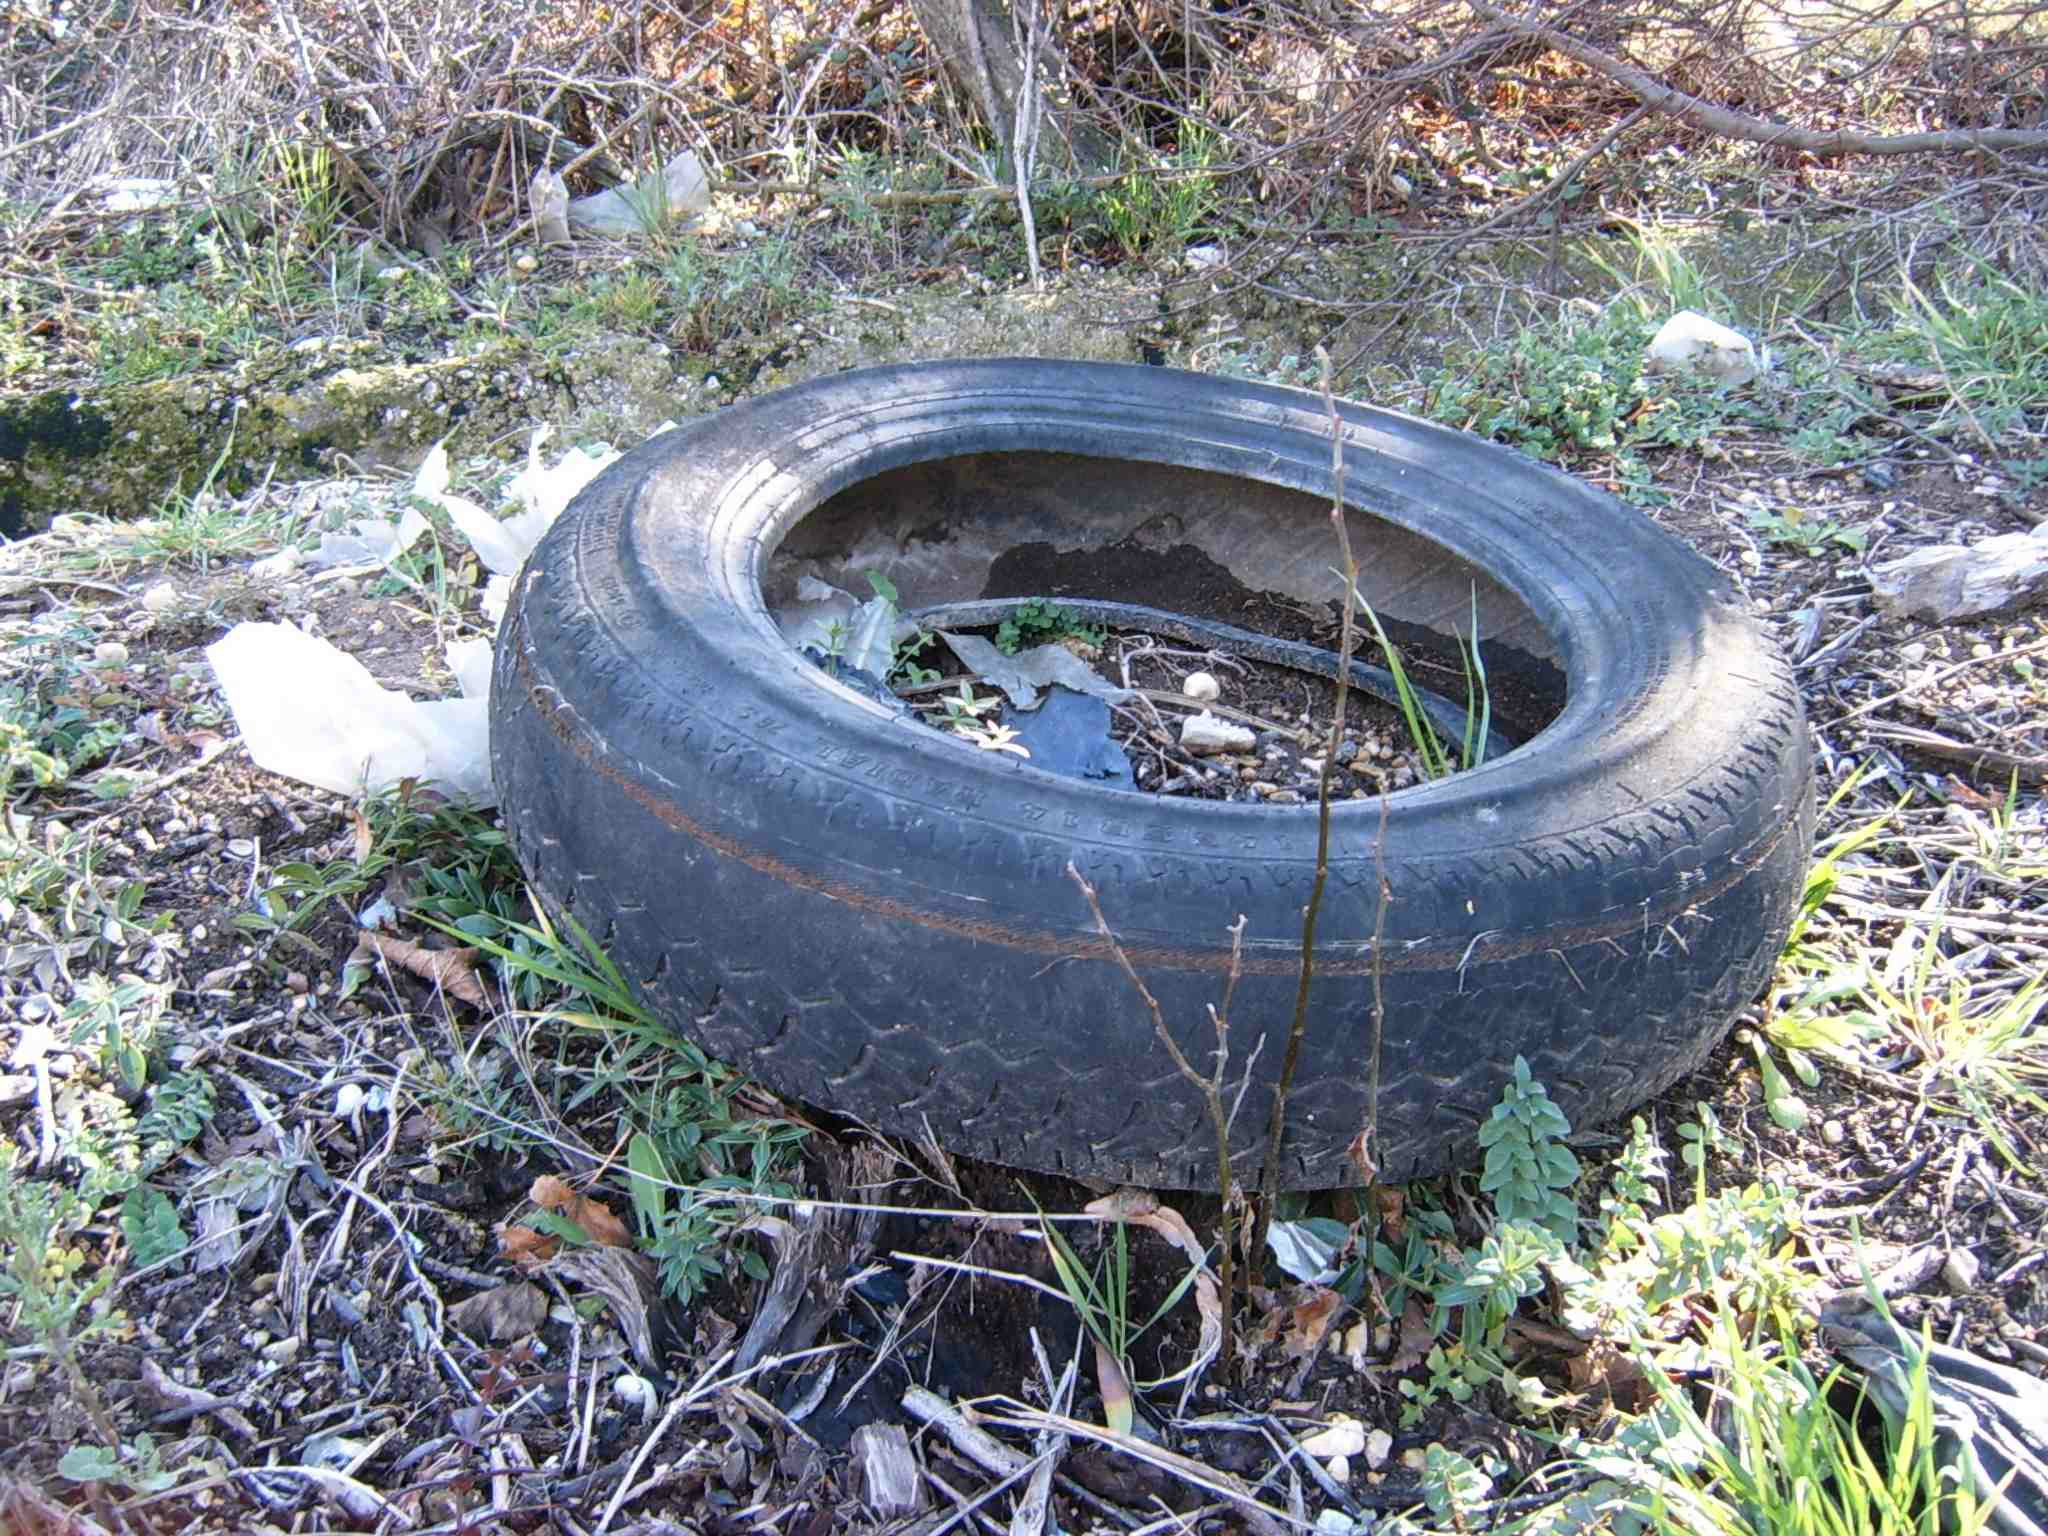 Déchet pneu dans nature 3 - déchet sauvage - pollution